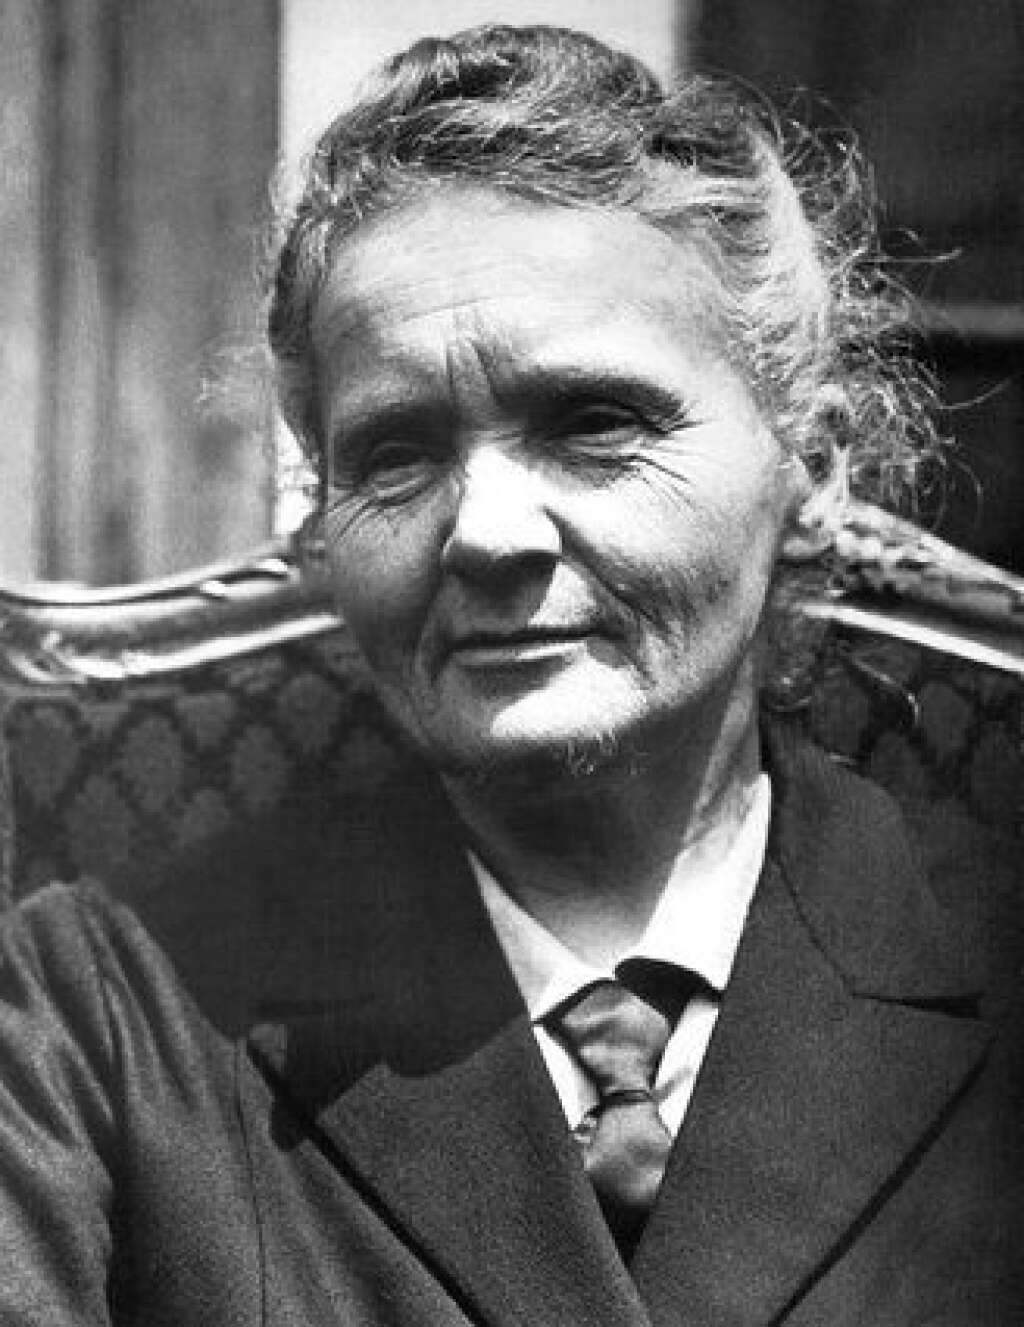 Marie Curie - Née Marie Skłodowska à Varsovie en 1867, elle a fait ses études supérieures à Paris où elle a rencontré son futur mari Pierre. C'est après son mariage qu'elle a obtenu sa naturalisation. Elle est donc franco-polonaise quand elle reçoit ses deux prix Nobel: physique en 1903 et Chimie en 1911.